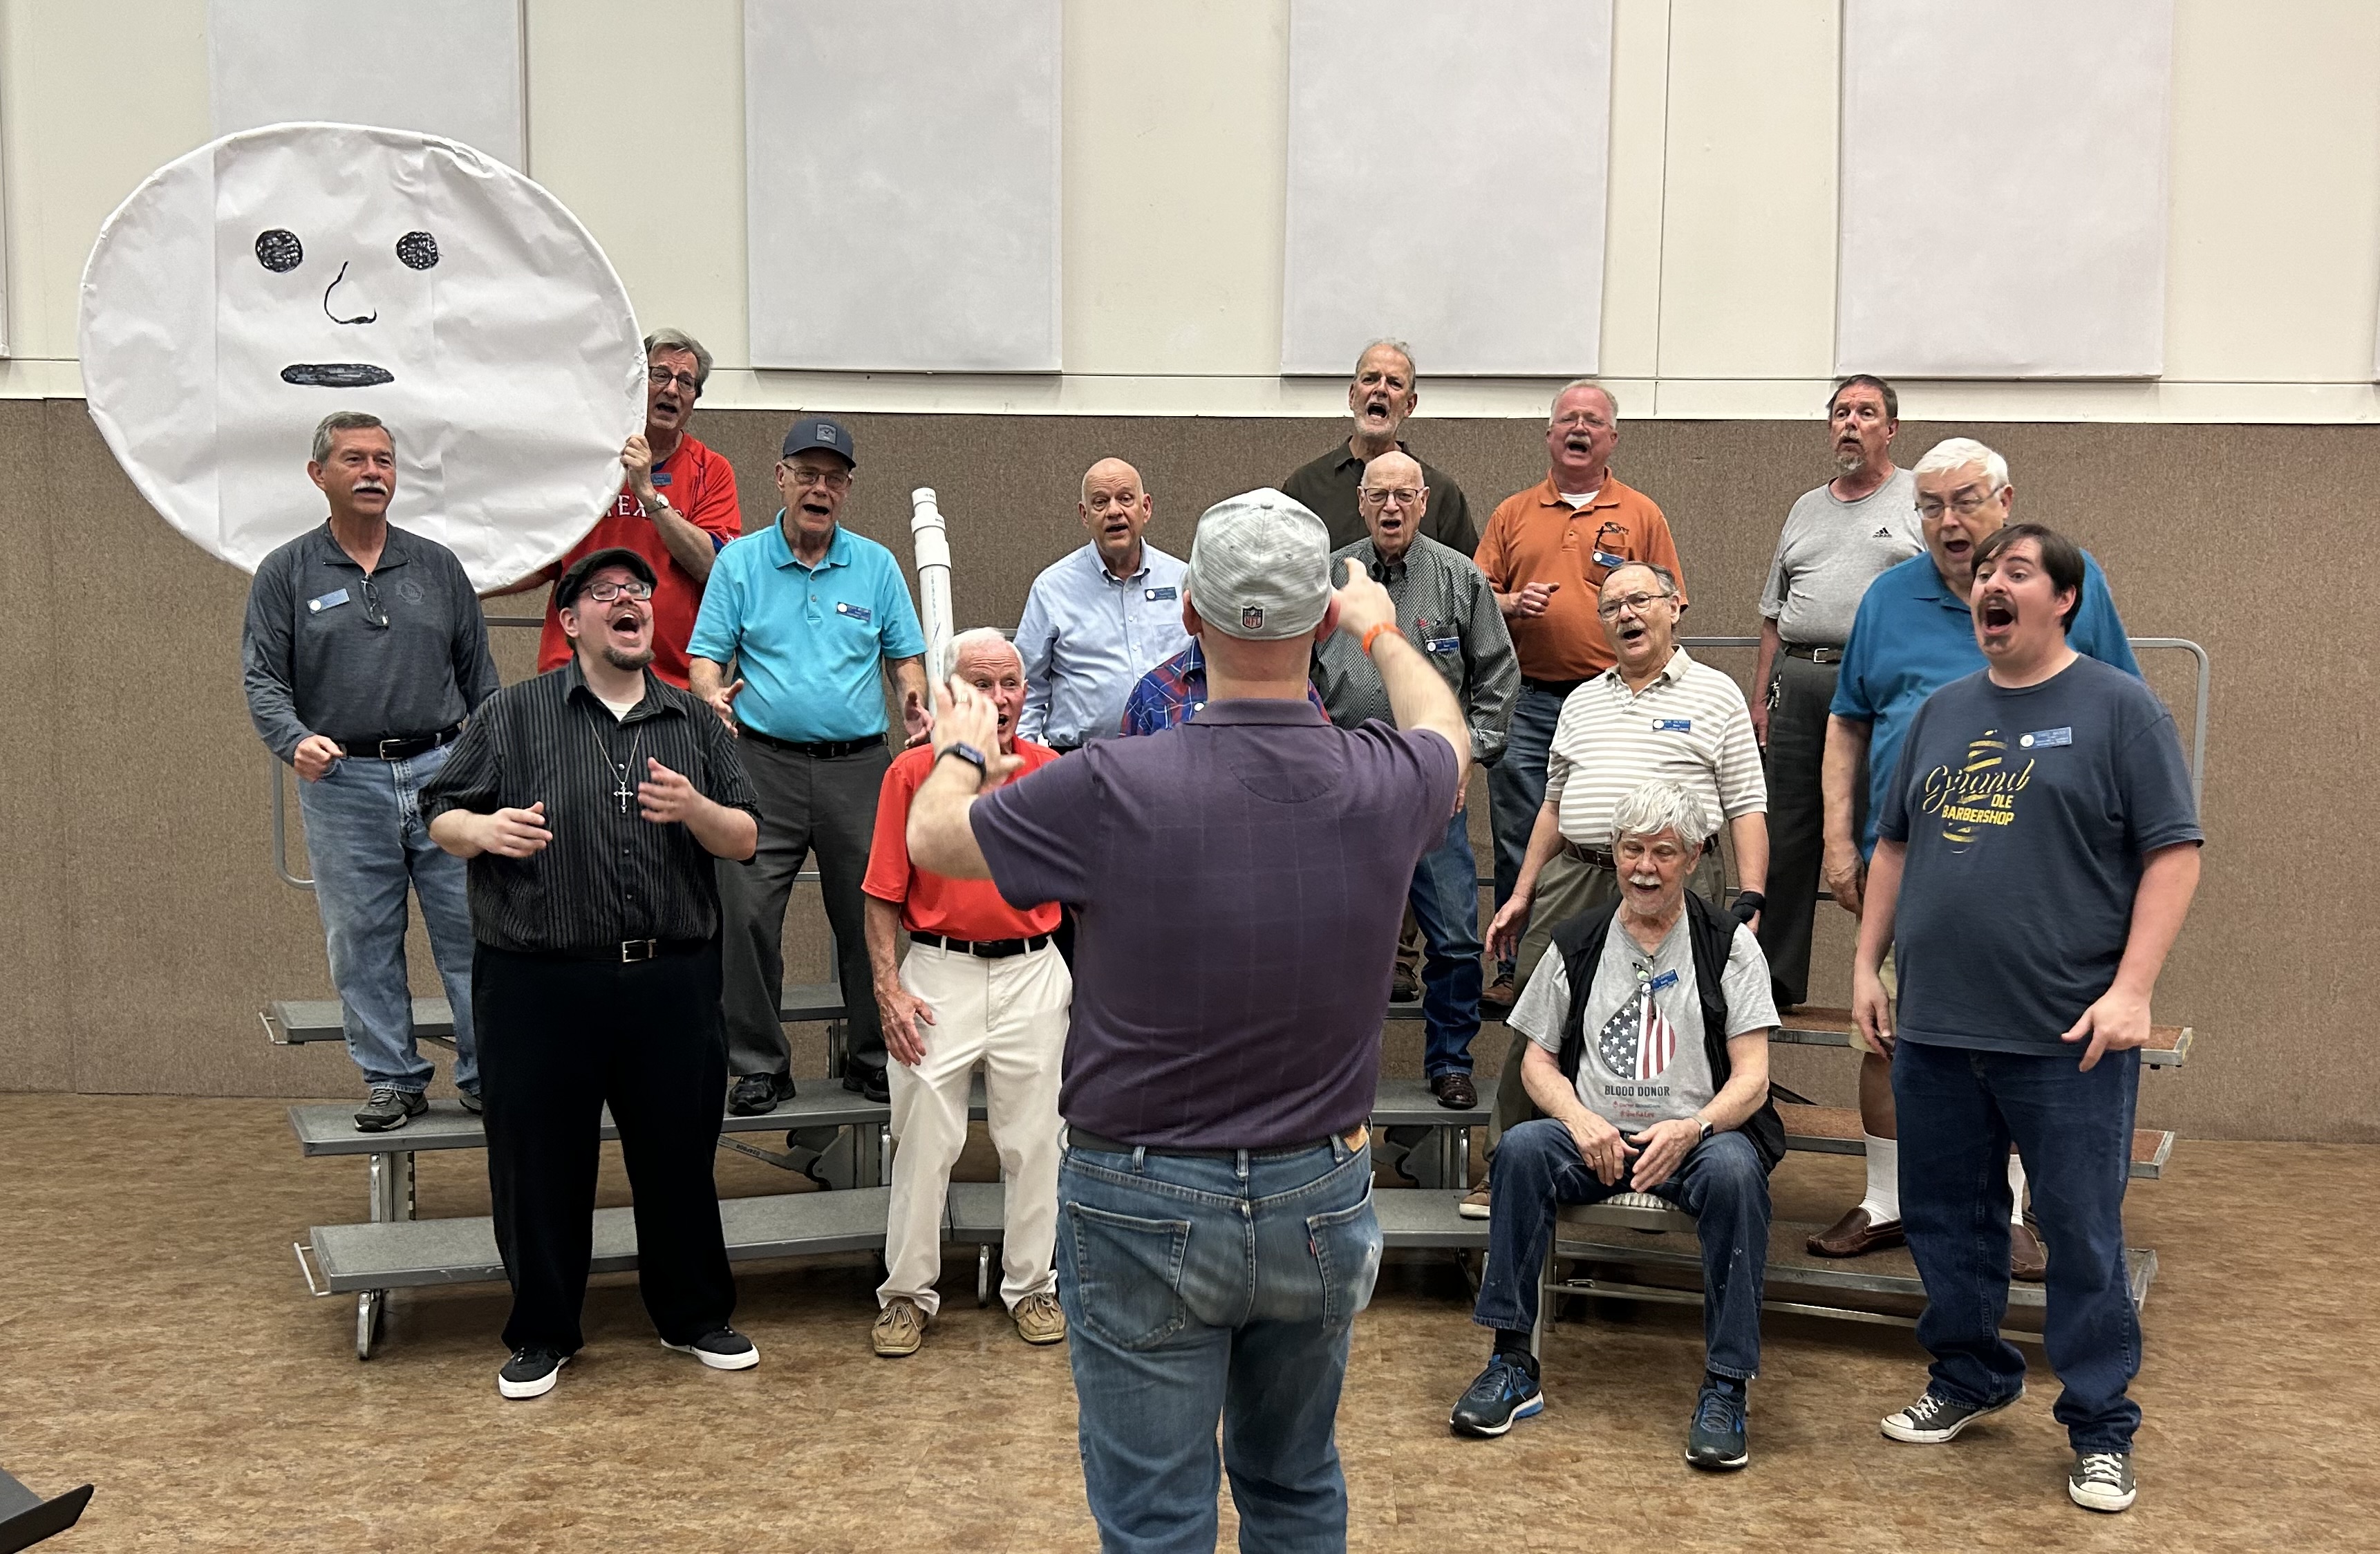 Male choir singing during a rehearsal